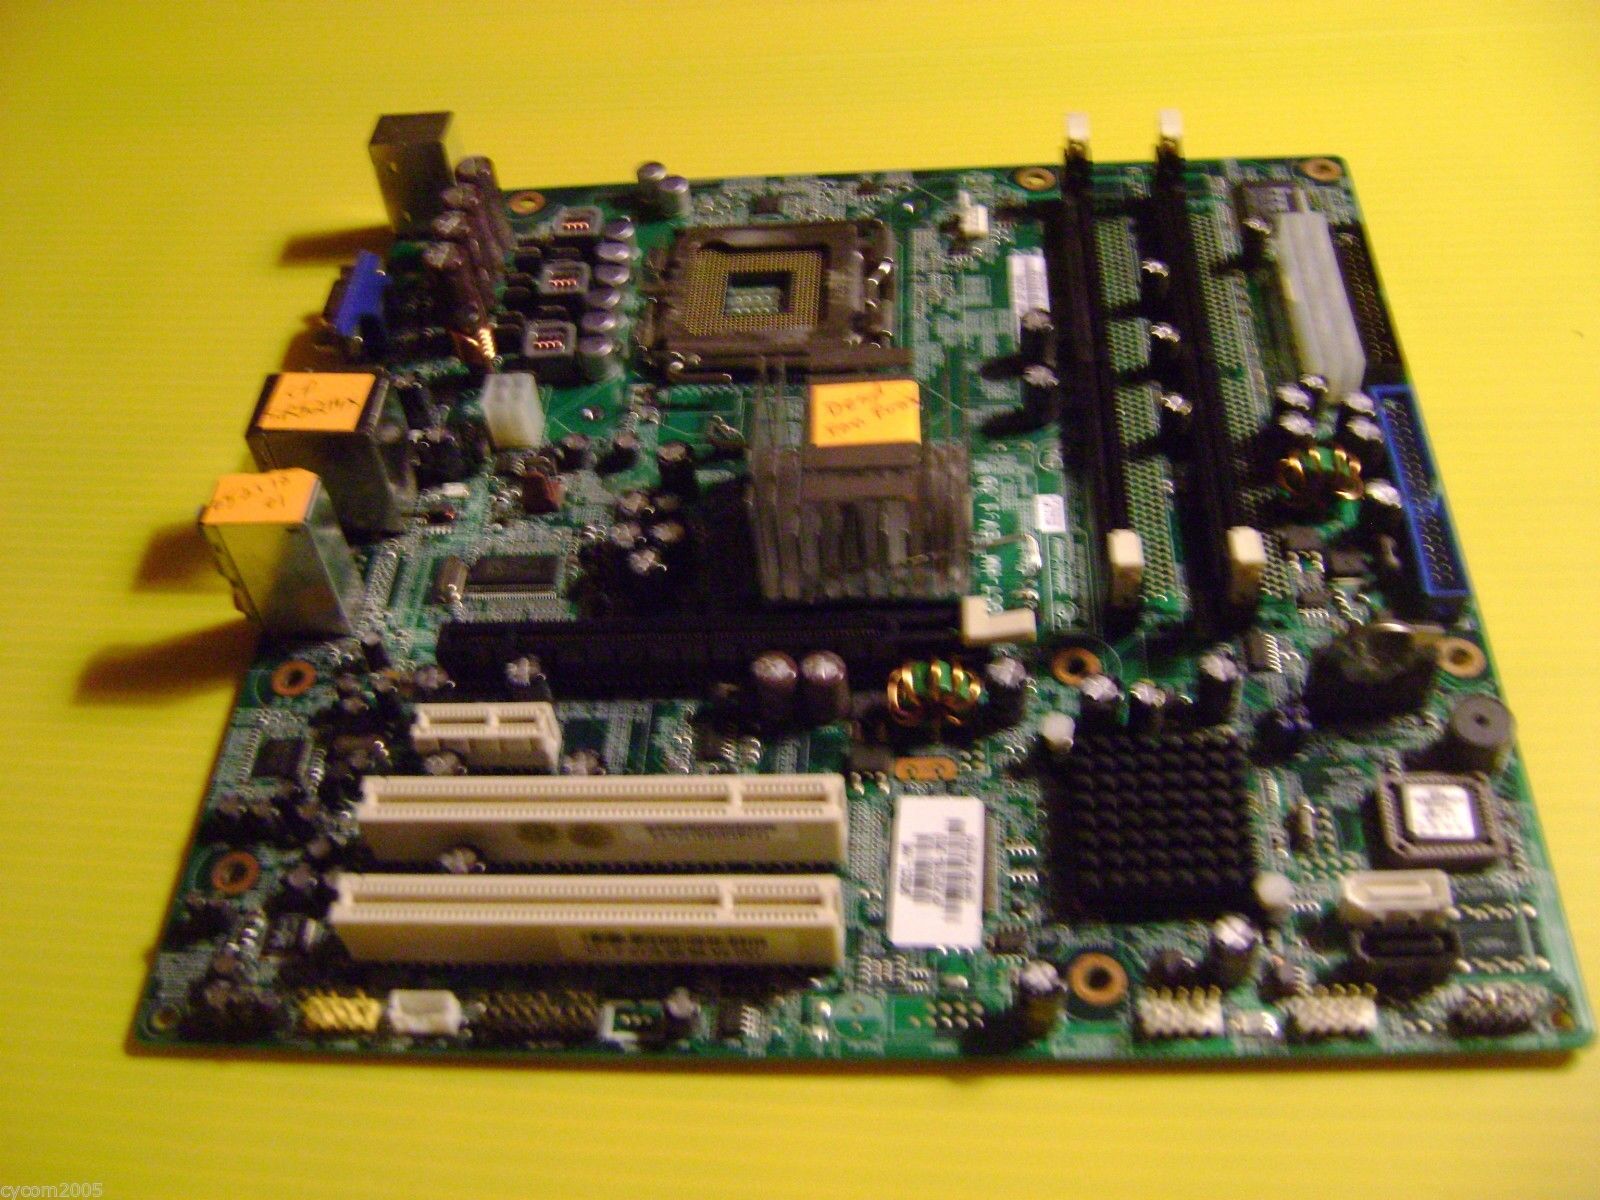 Compaq Presario SR5214X LIVERMORE ECS 945GCT-HM Intel 945GC Socket 775 AS IS